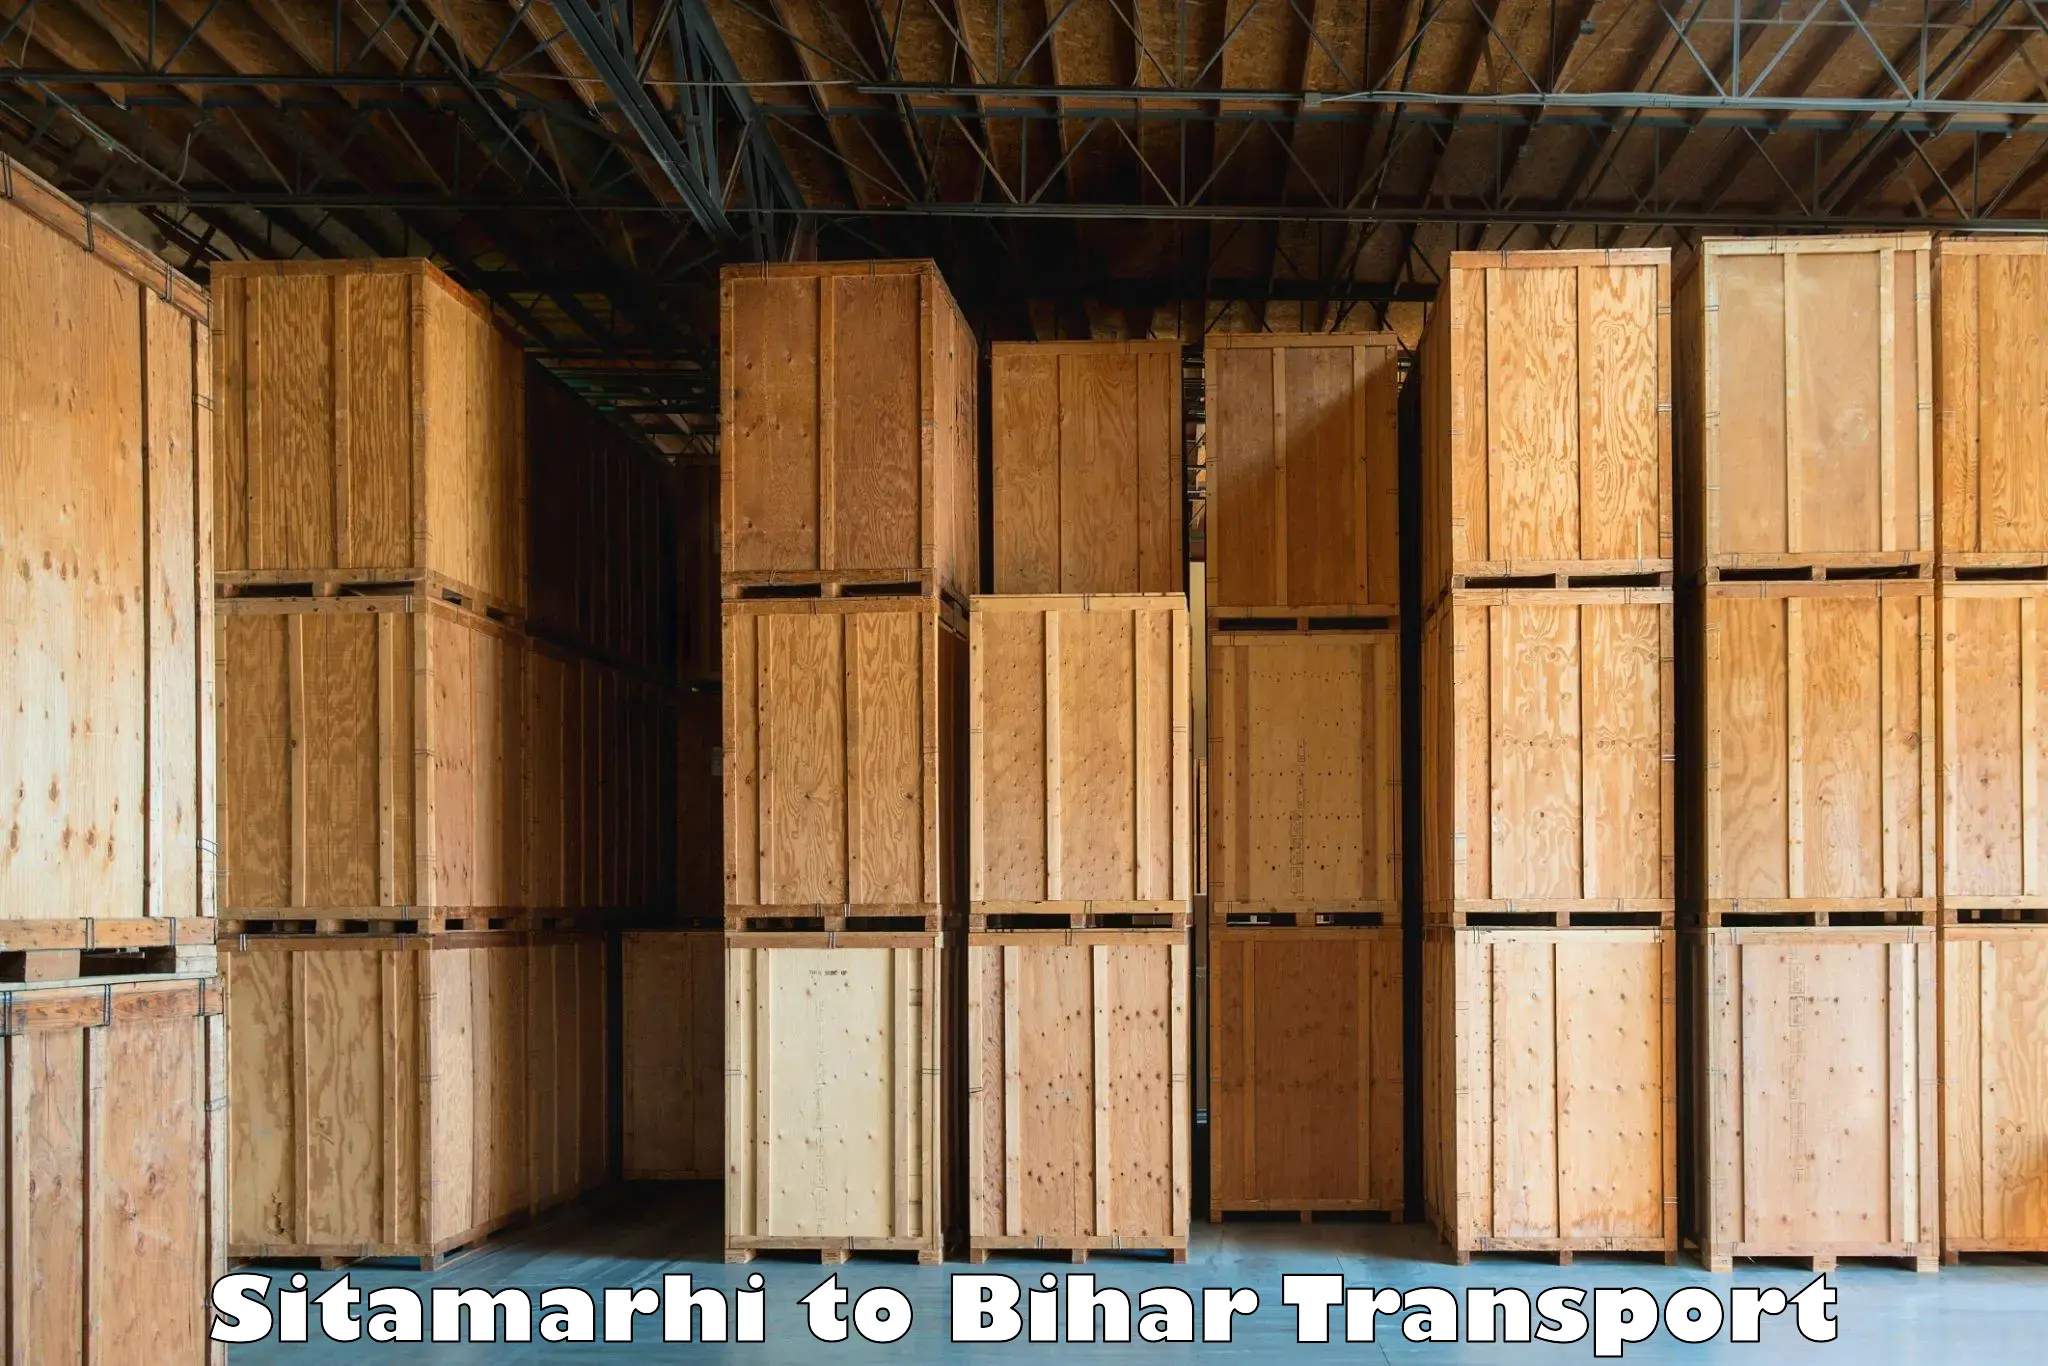 Online transport service Sitamarhi to Brahmapur